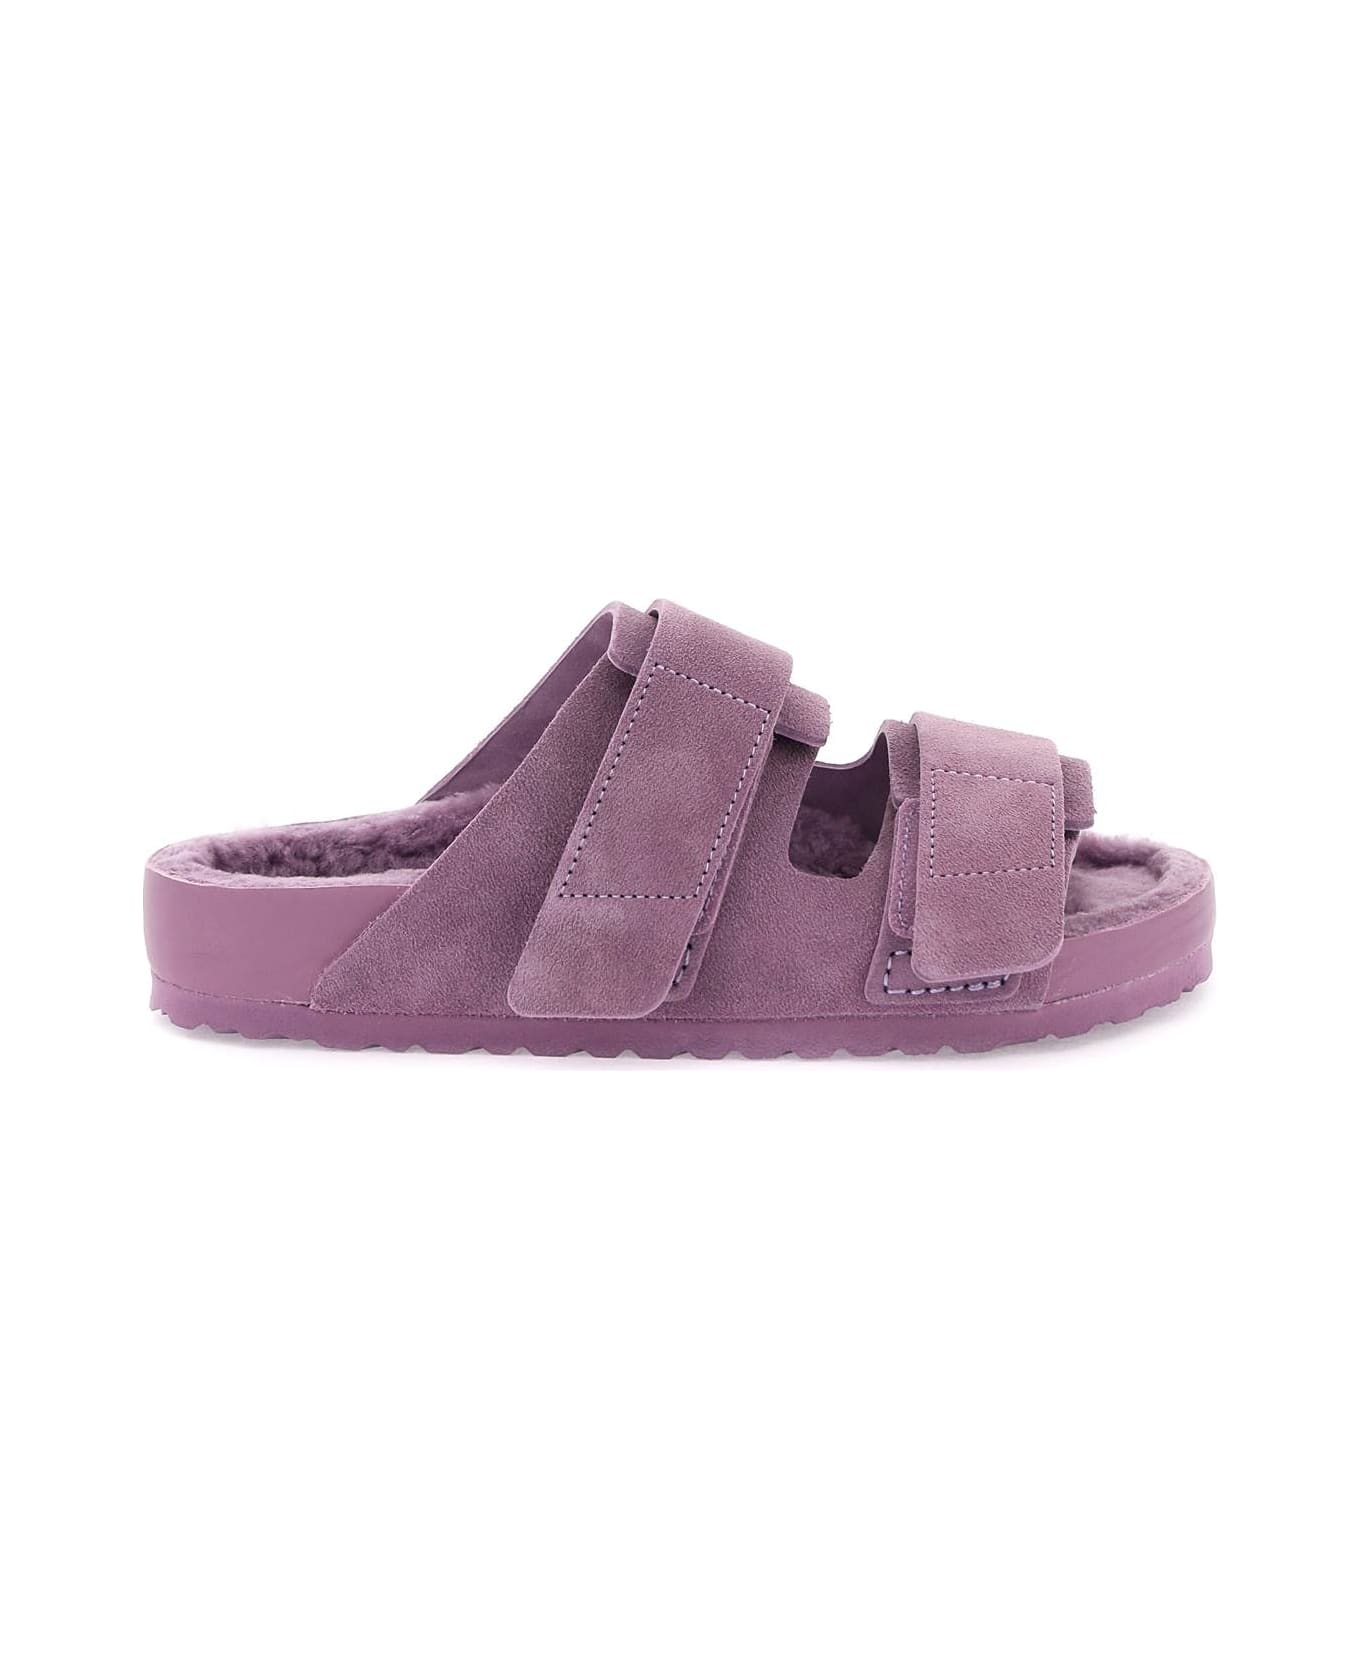 Birkenstock Uji Slides - MAUVE (Purple) サンダル